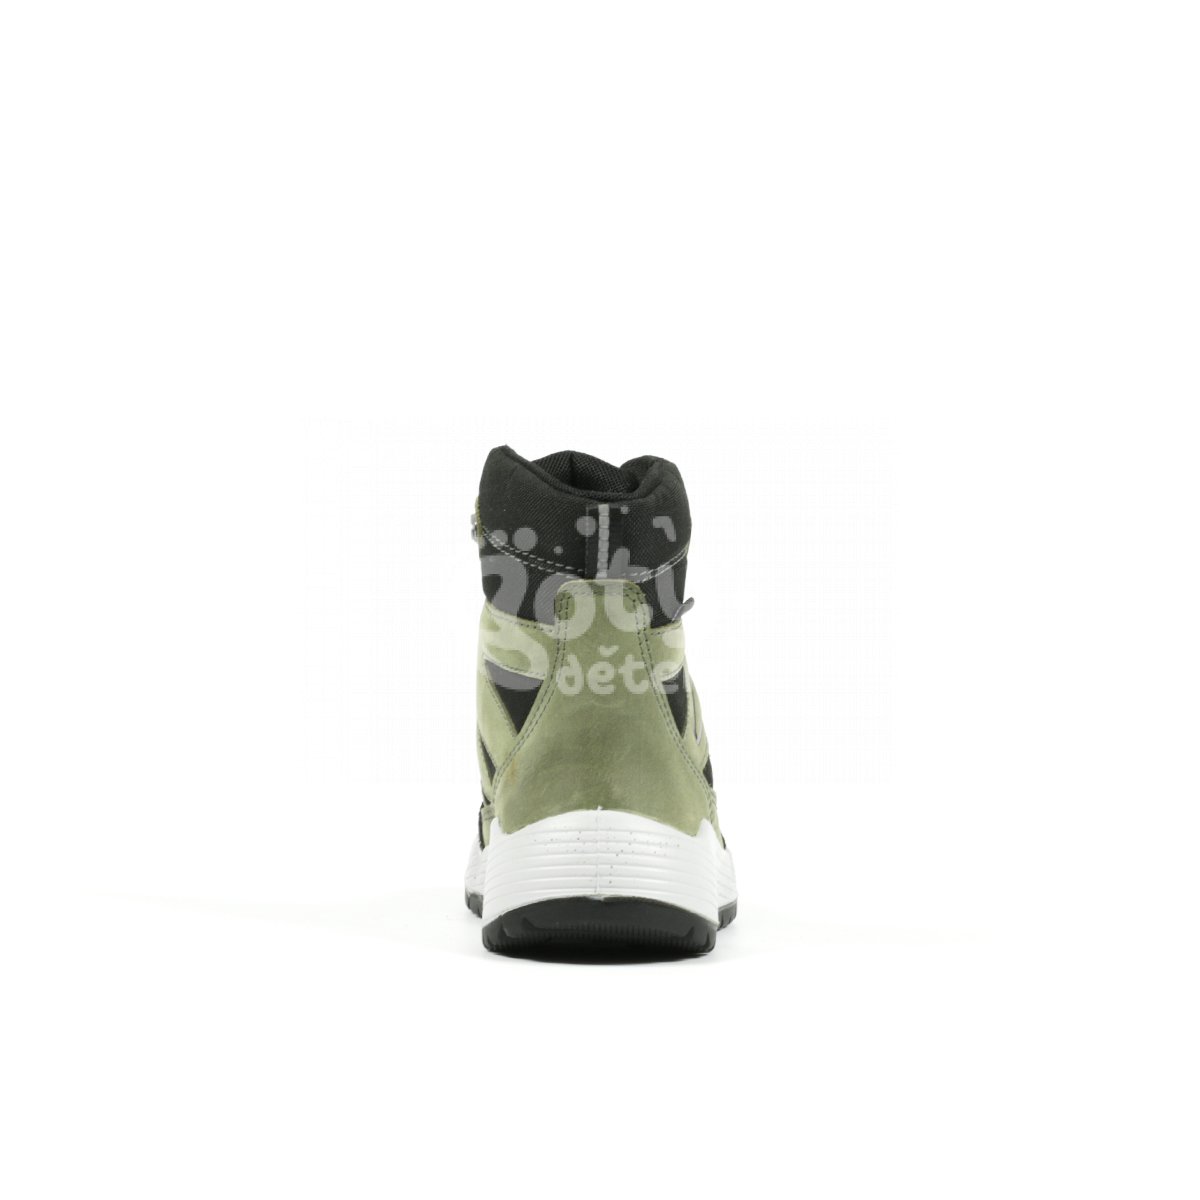 Zimní obuv RS-1 Richter 6354-4191-8501 olive